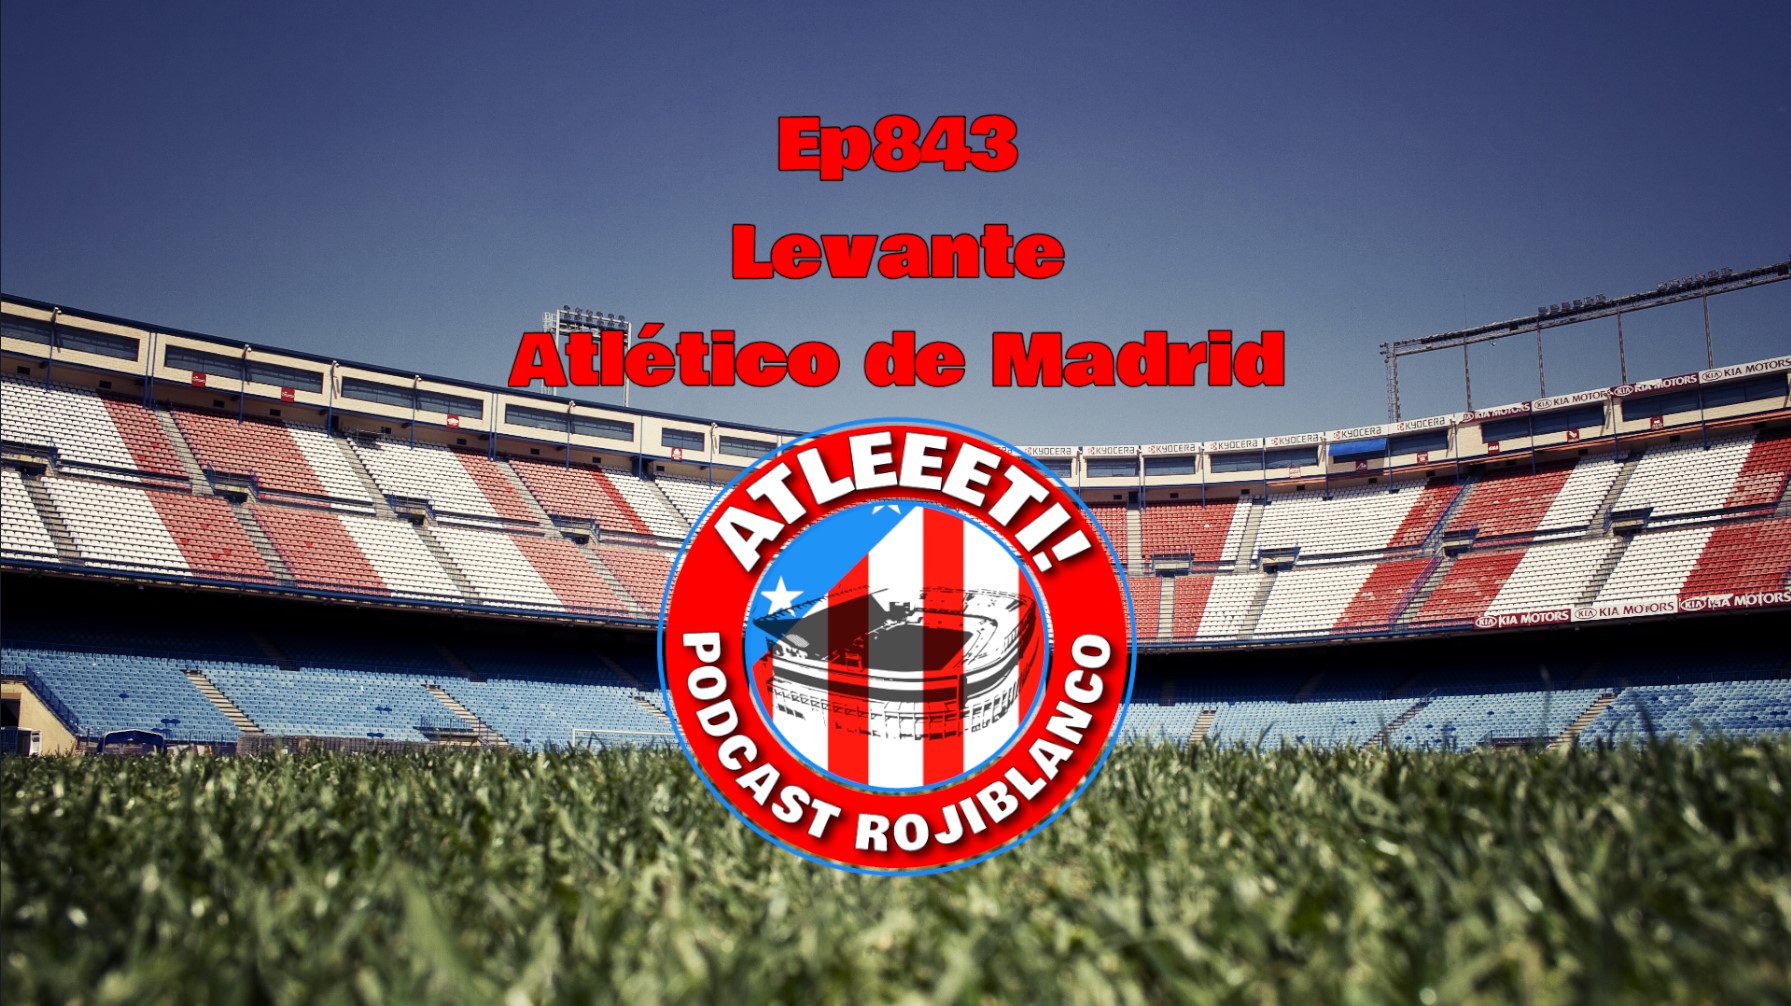 Ep843: Levante 0-2 Atlético de Madrid